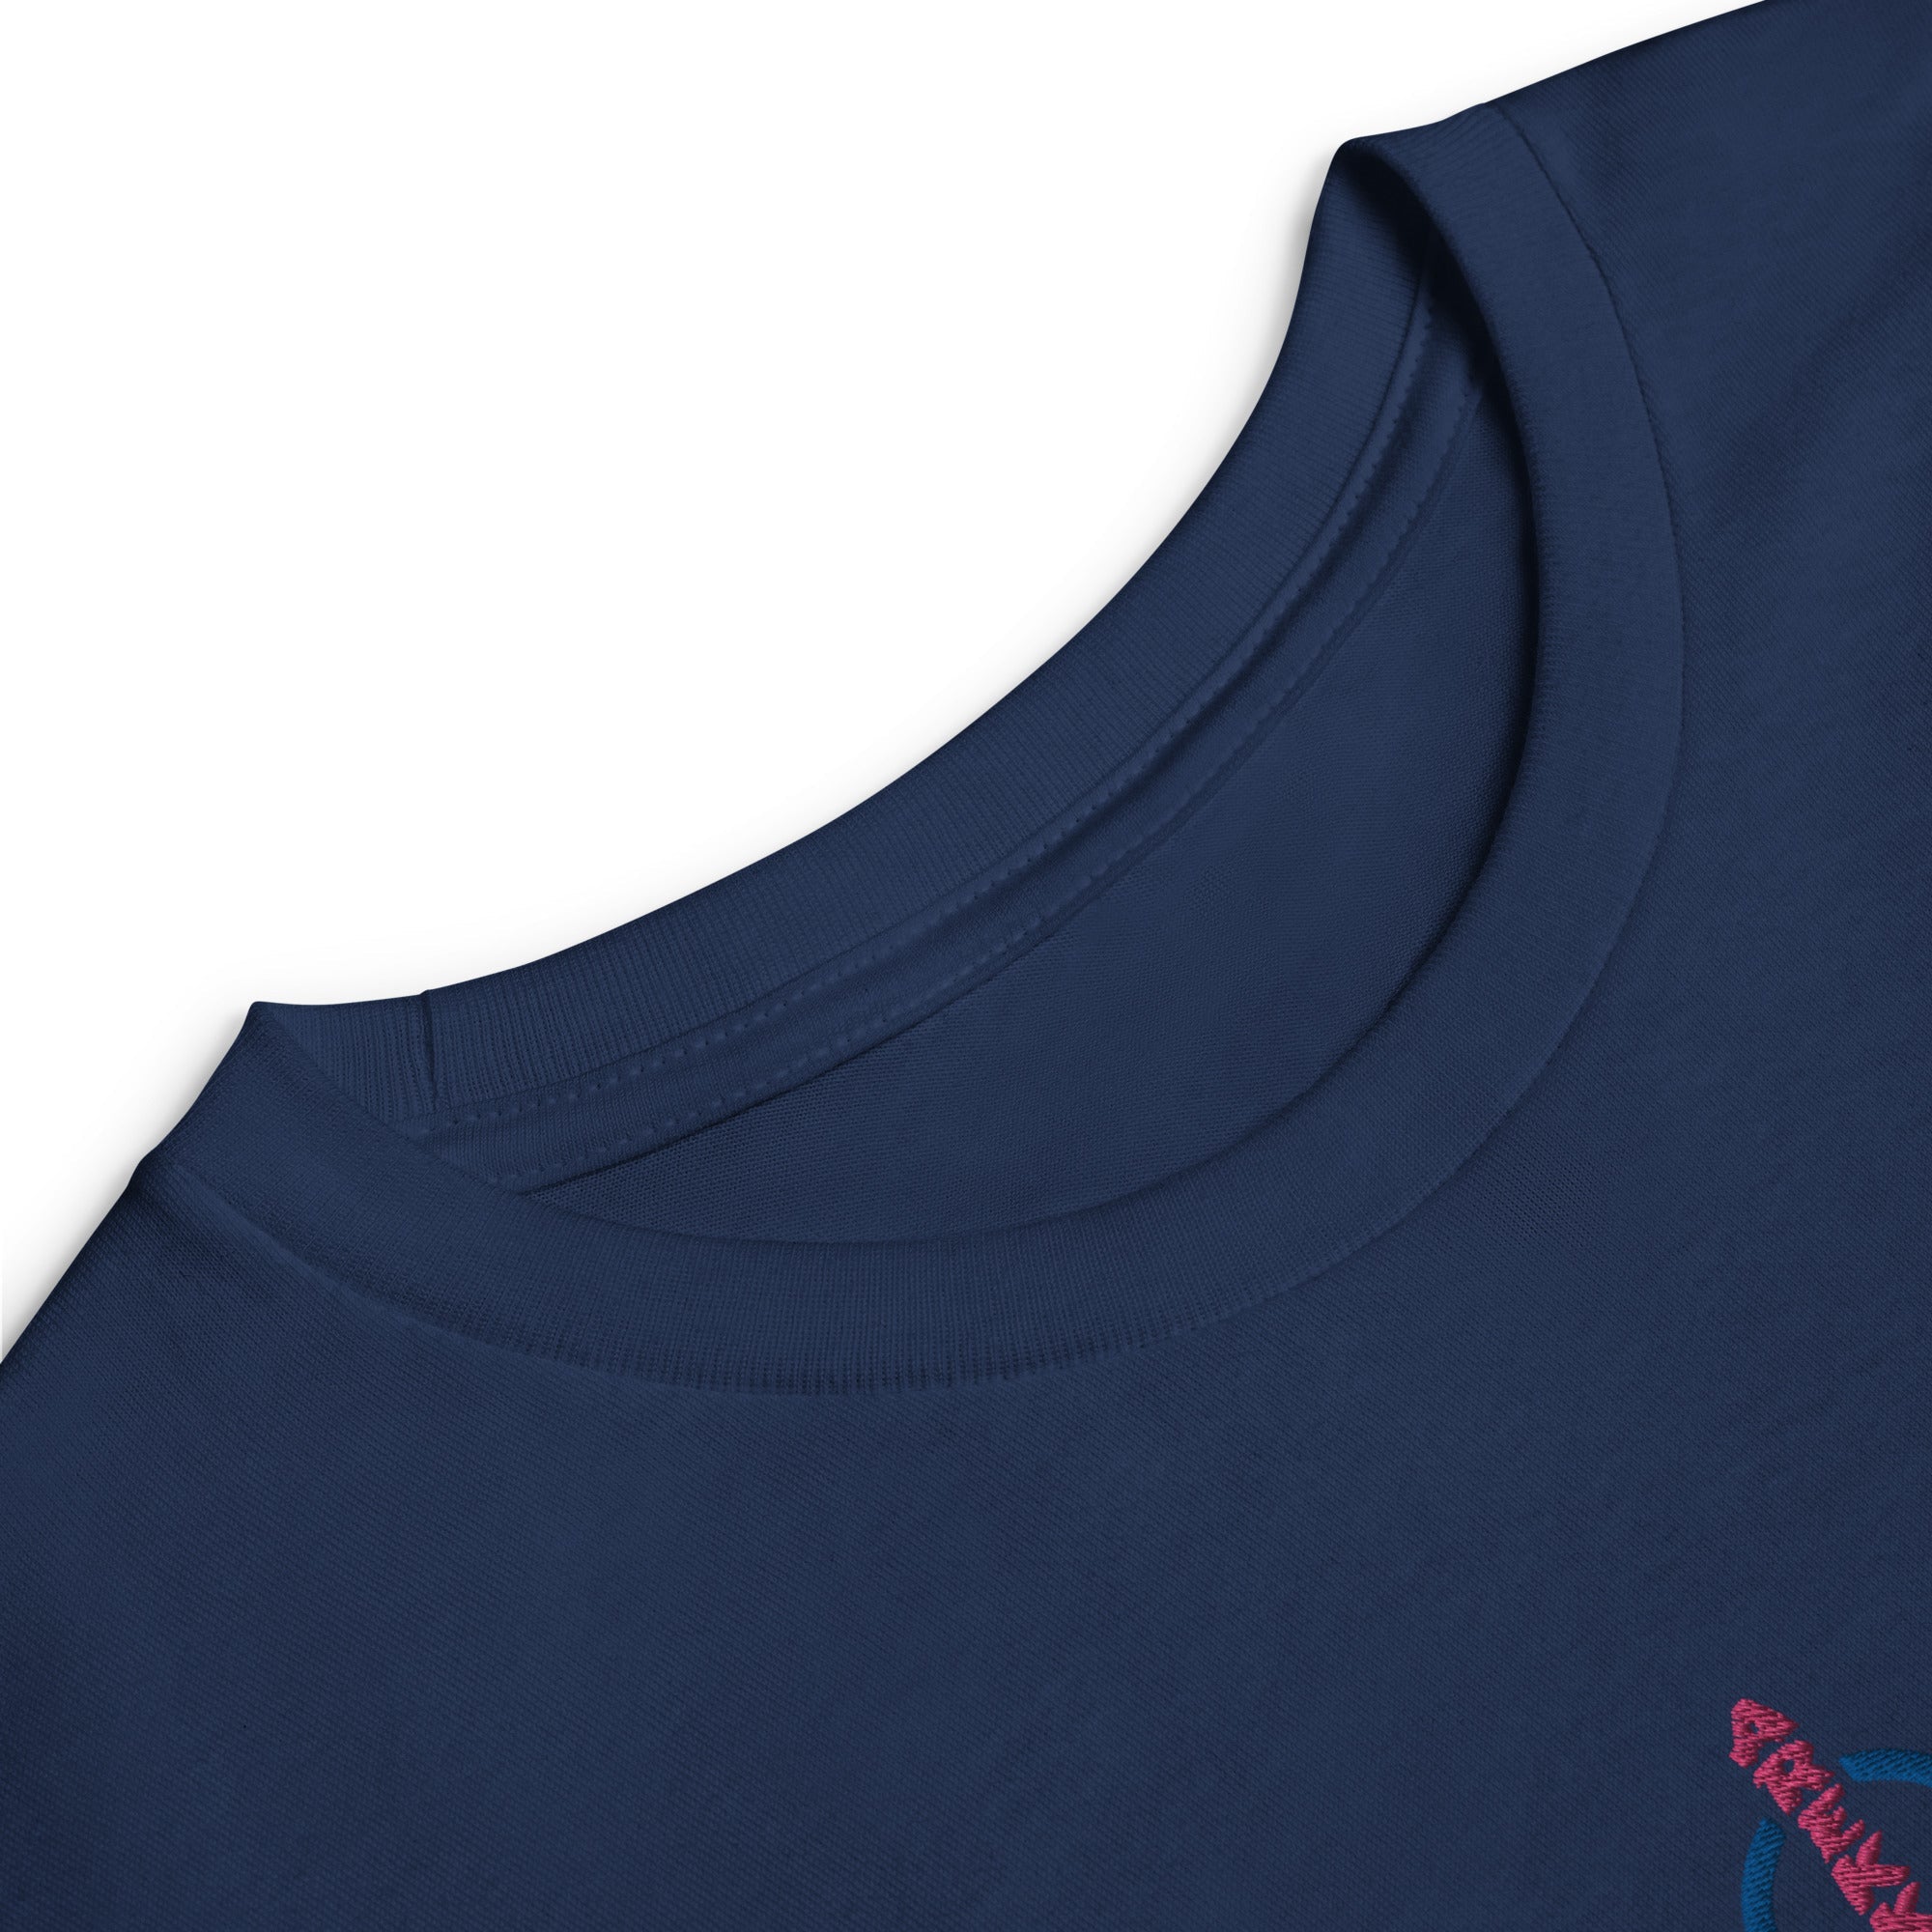 Unisex Youth Long Sleeve Shirt-10